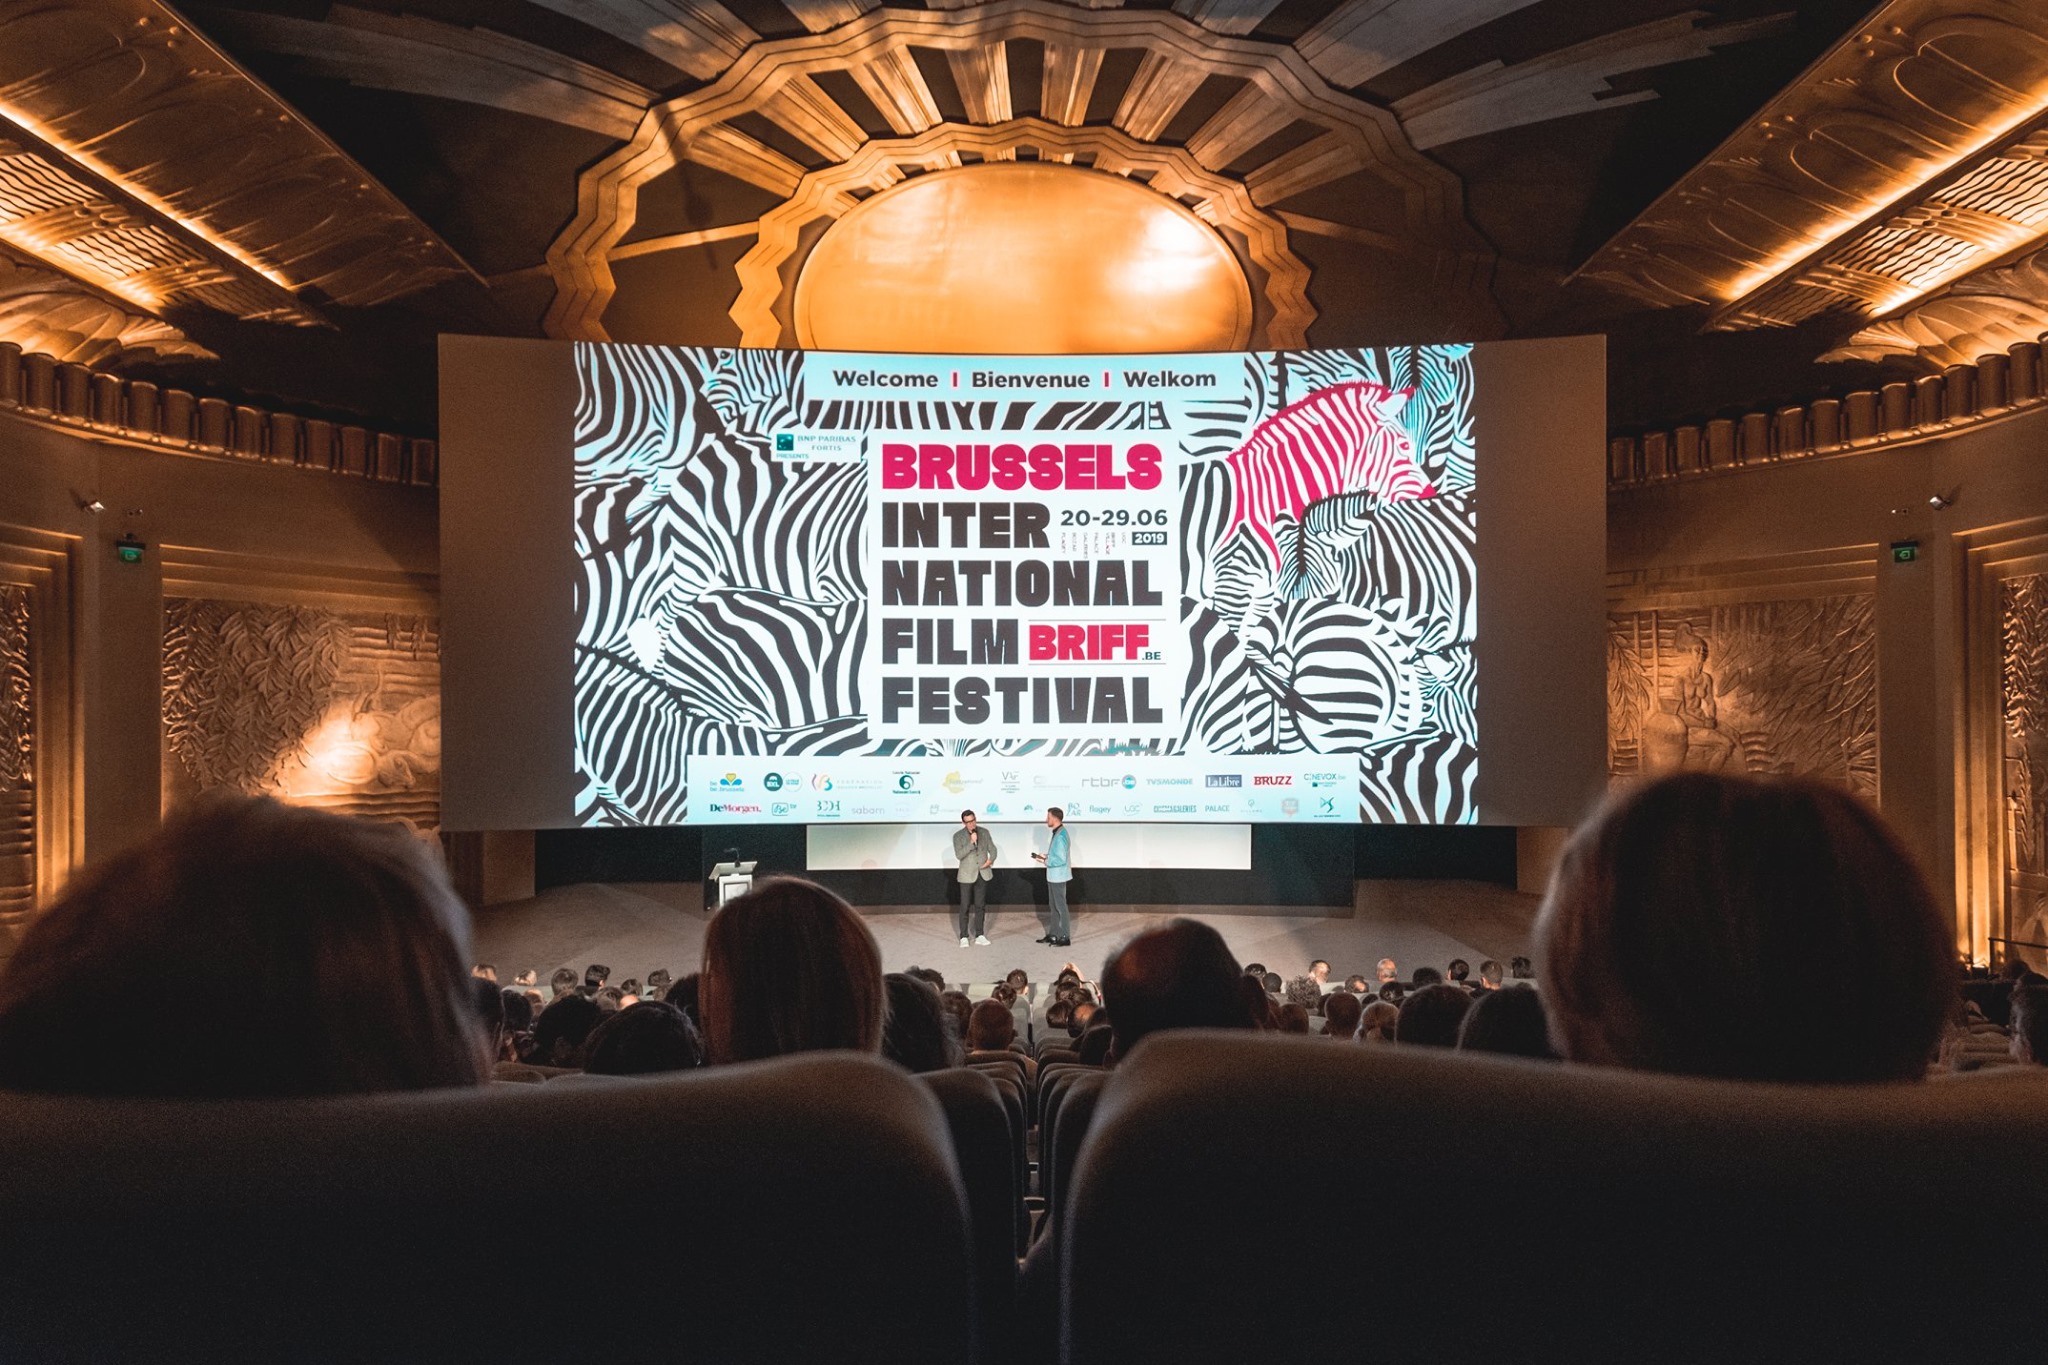 Brussels International Film Festival: 6th edition!